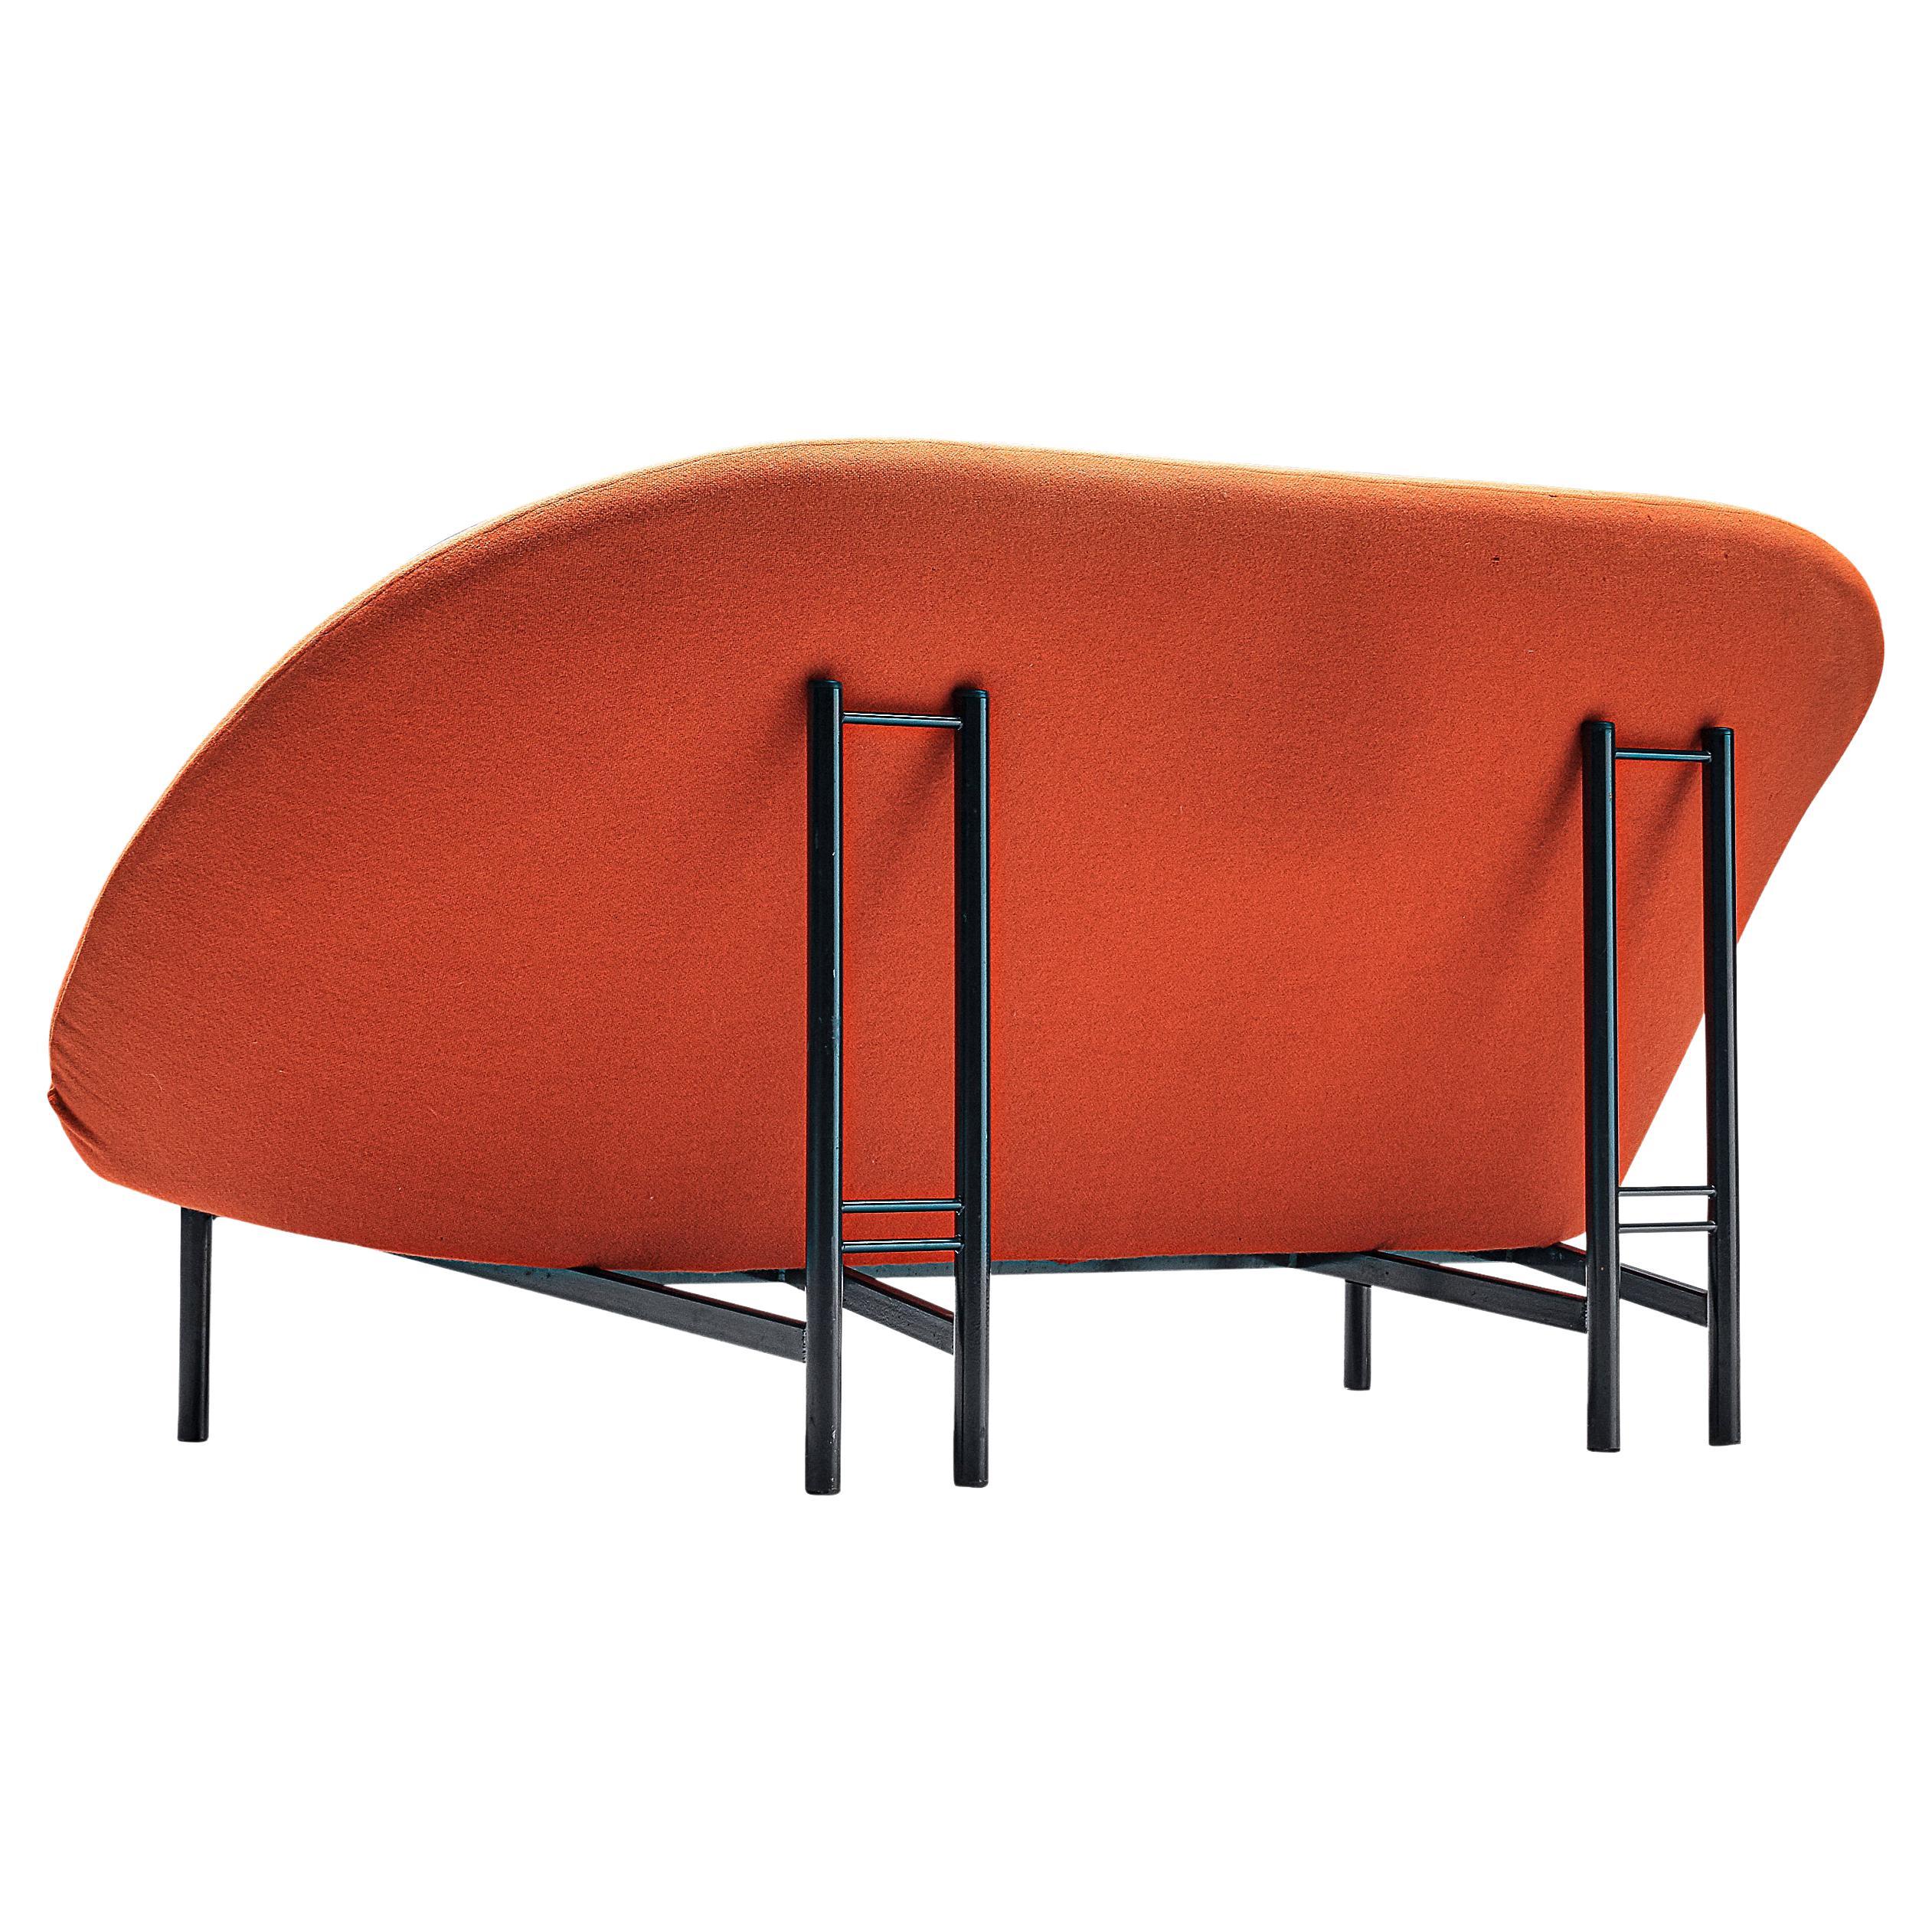 Theo Ruth für Artifort Sofa mit orange-roter Polsterung 